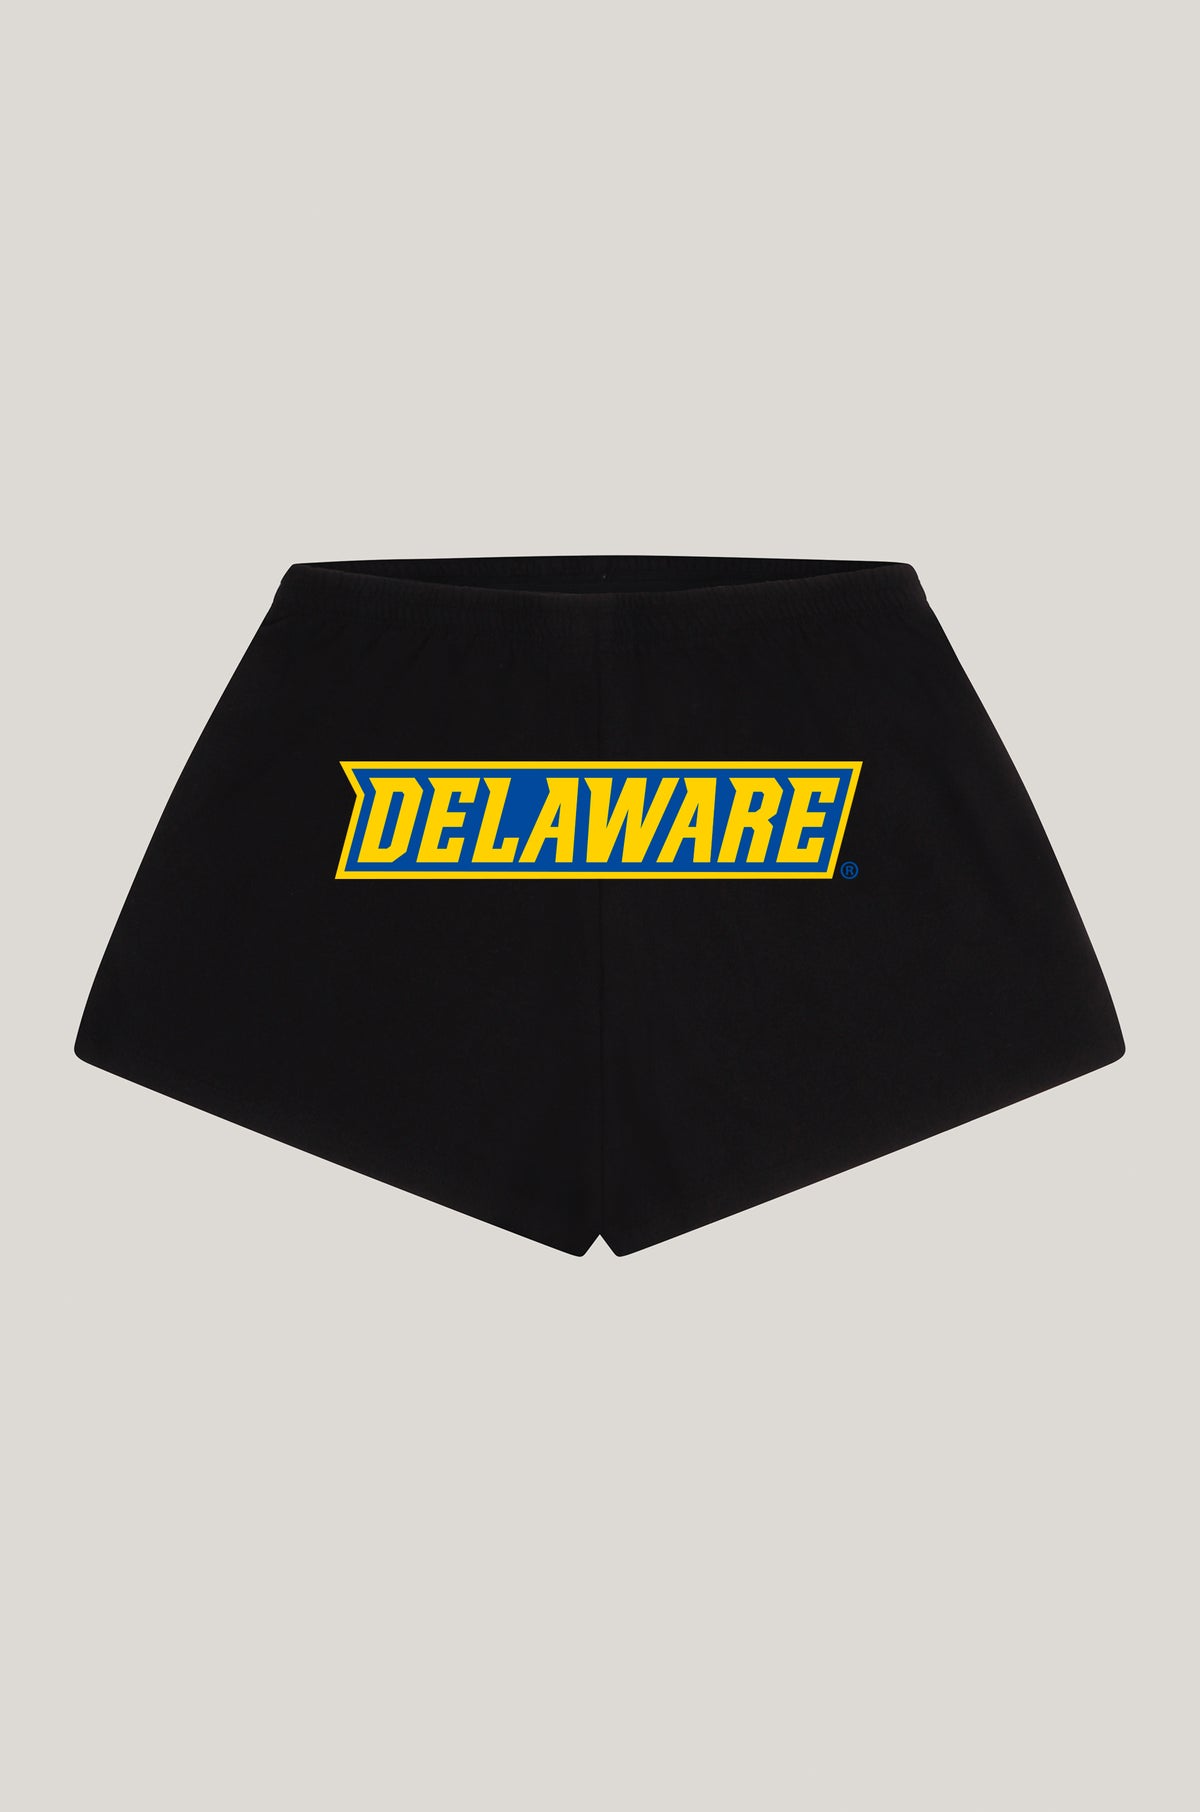 Delaware P.E. Shorts